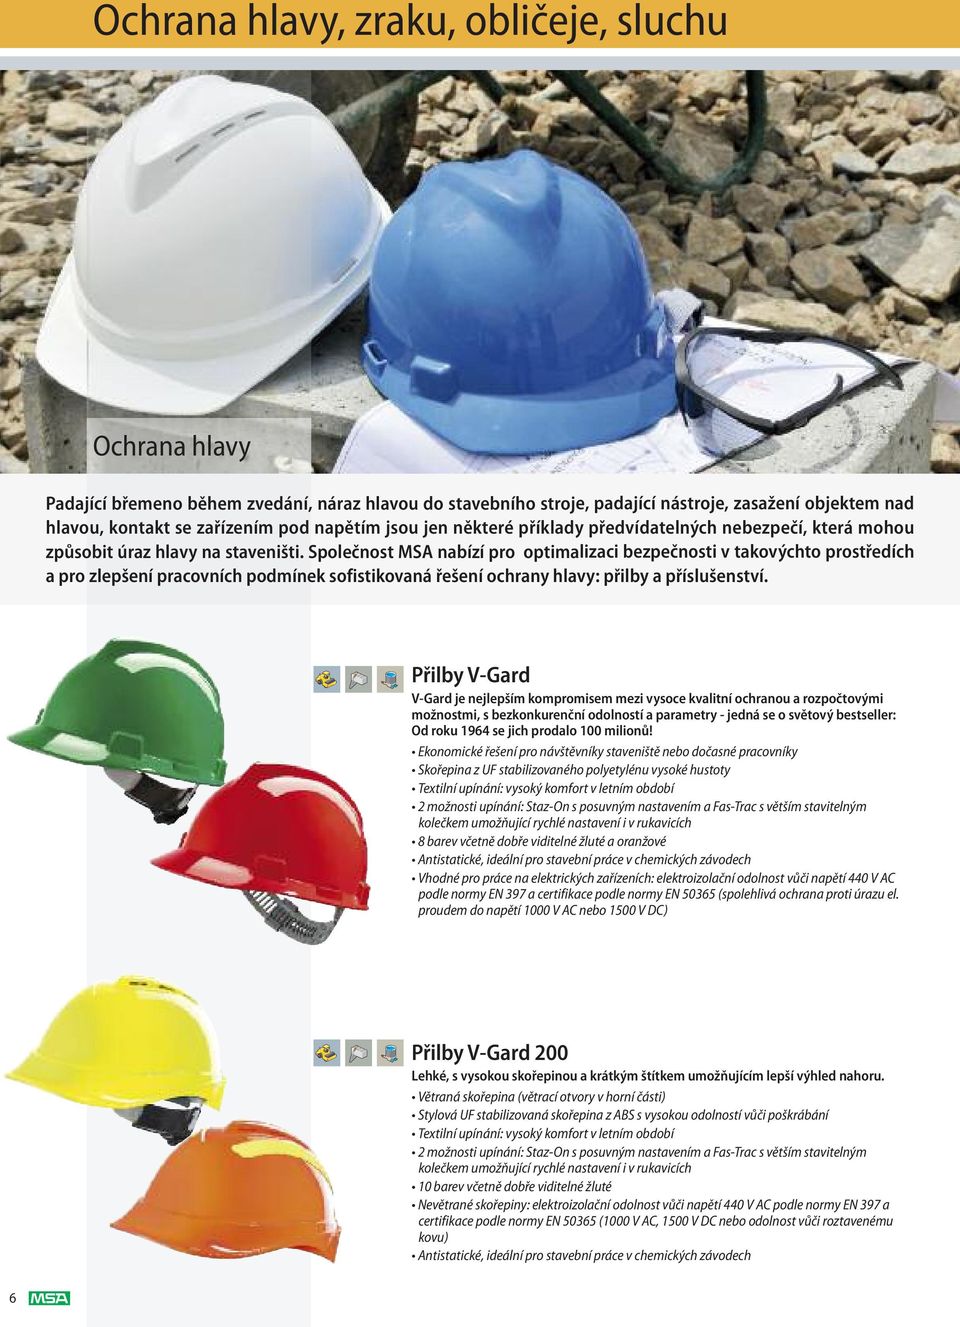 Společnost MSA nabízí pro optimalizaci bezpečnosti v takovýchto prostředích a pro zlepšení pracovních podmínek sofistikovaná řešení ochrany hlavy: přilby a příslušenství.